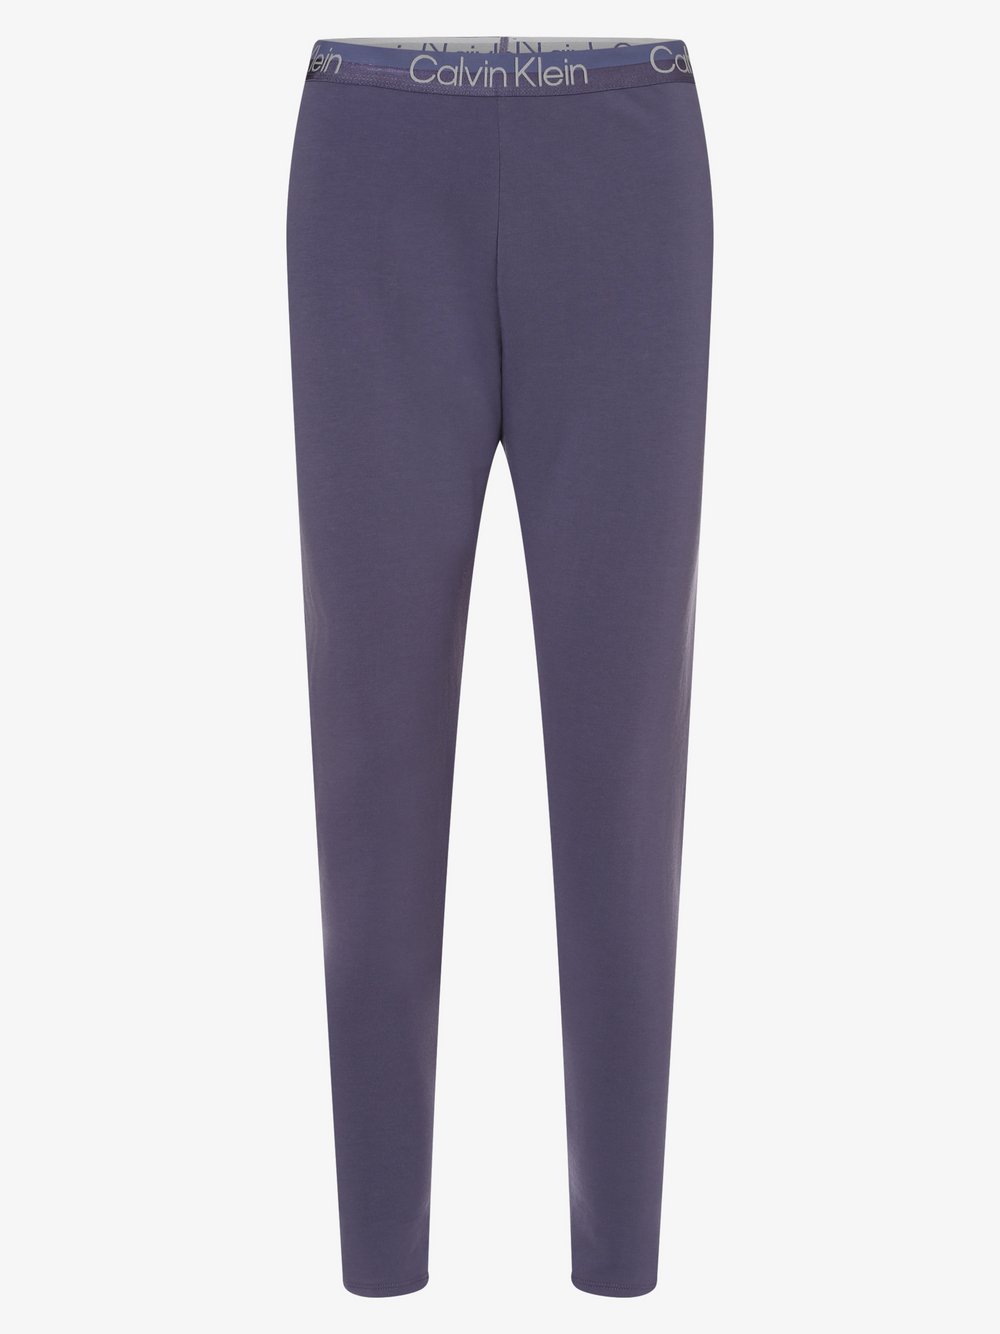 Calvin Klein - Damskie spodnie od piżamy, lila